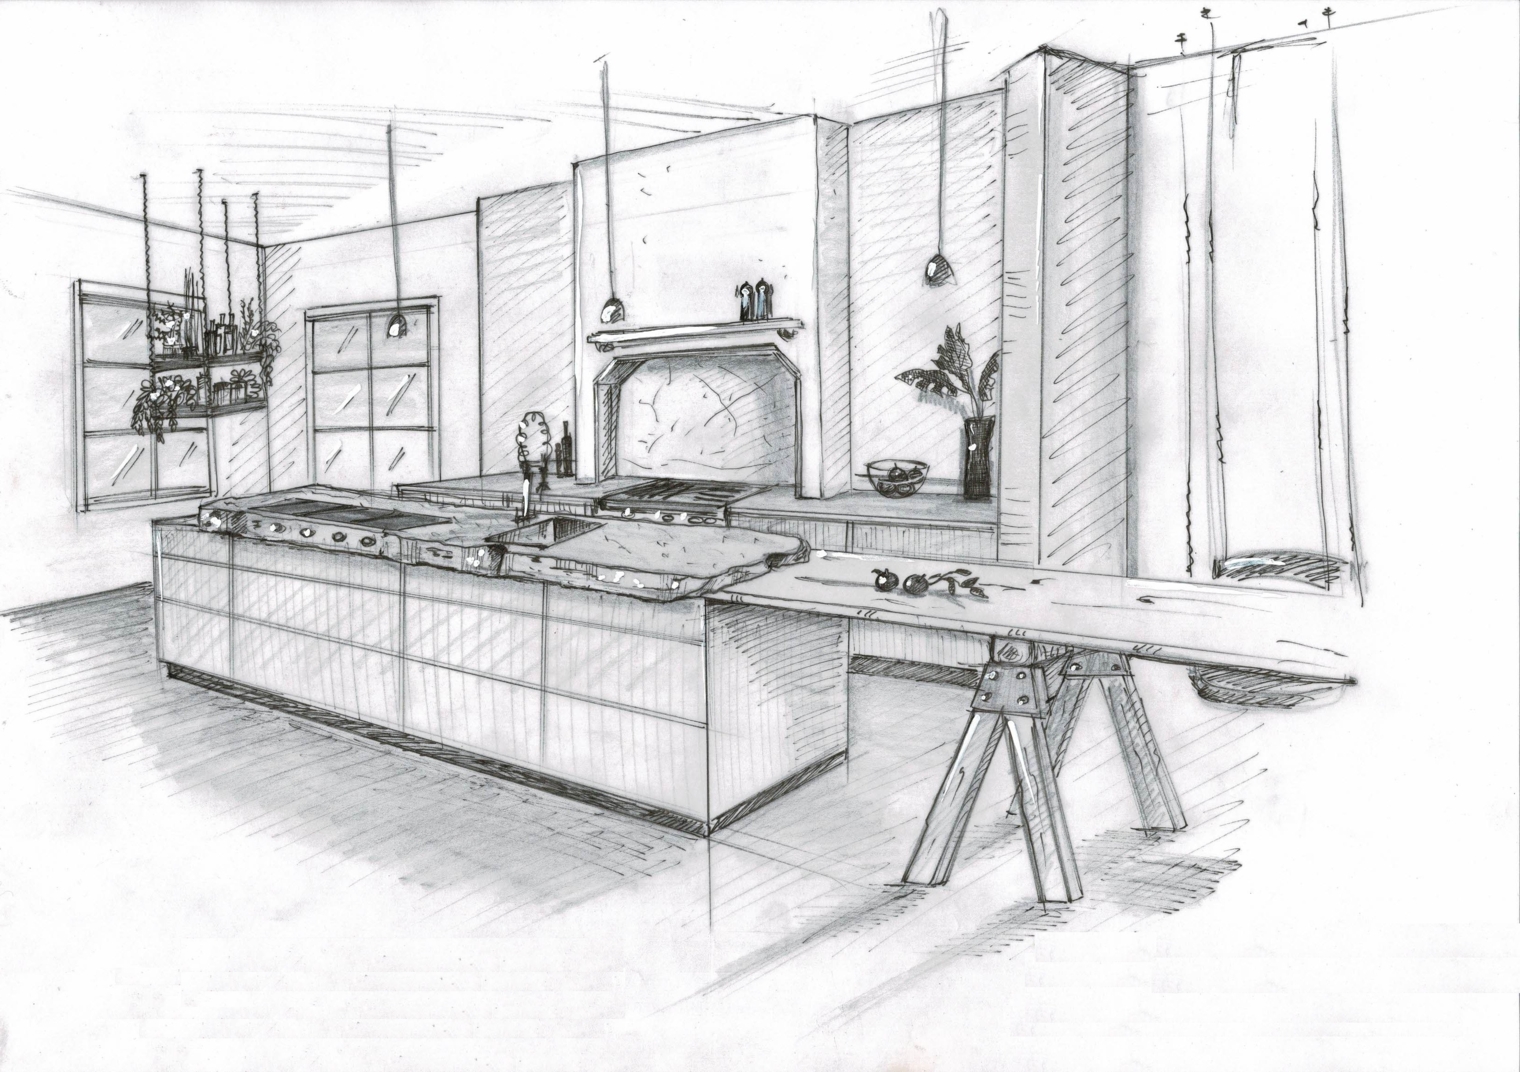 Loftküche mit gemauerter Kochnische, Küchenfront Nussbaum massiv, Tisch mit Arbeitsböcken